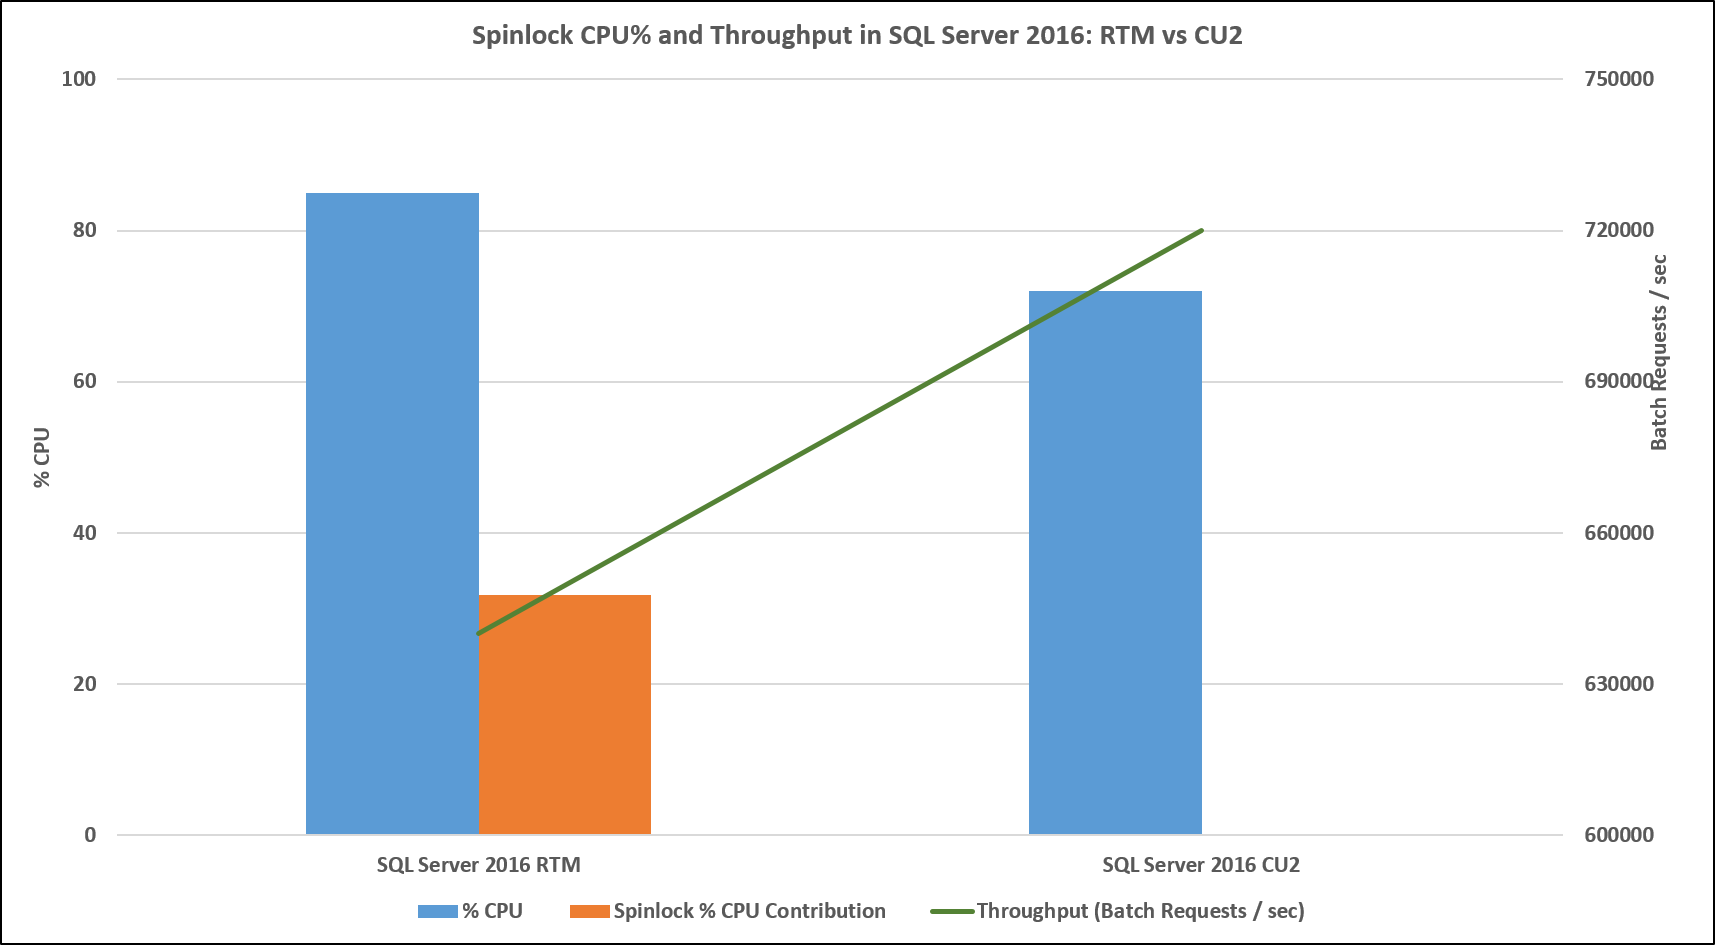 Figure 3: Spinlock CPU% and Throughput in SQL Server 2016: RTM vs CU2